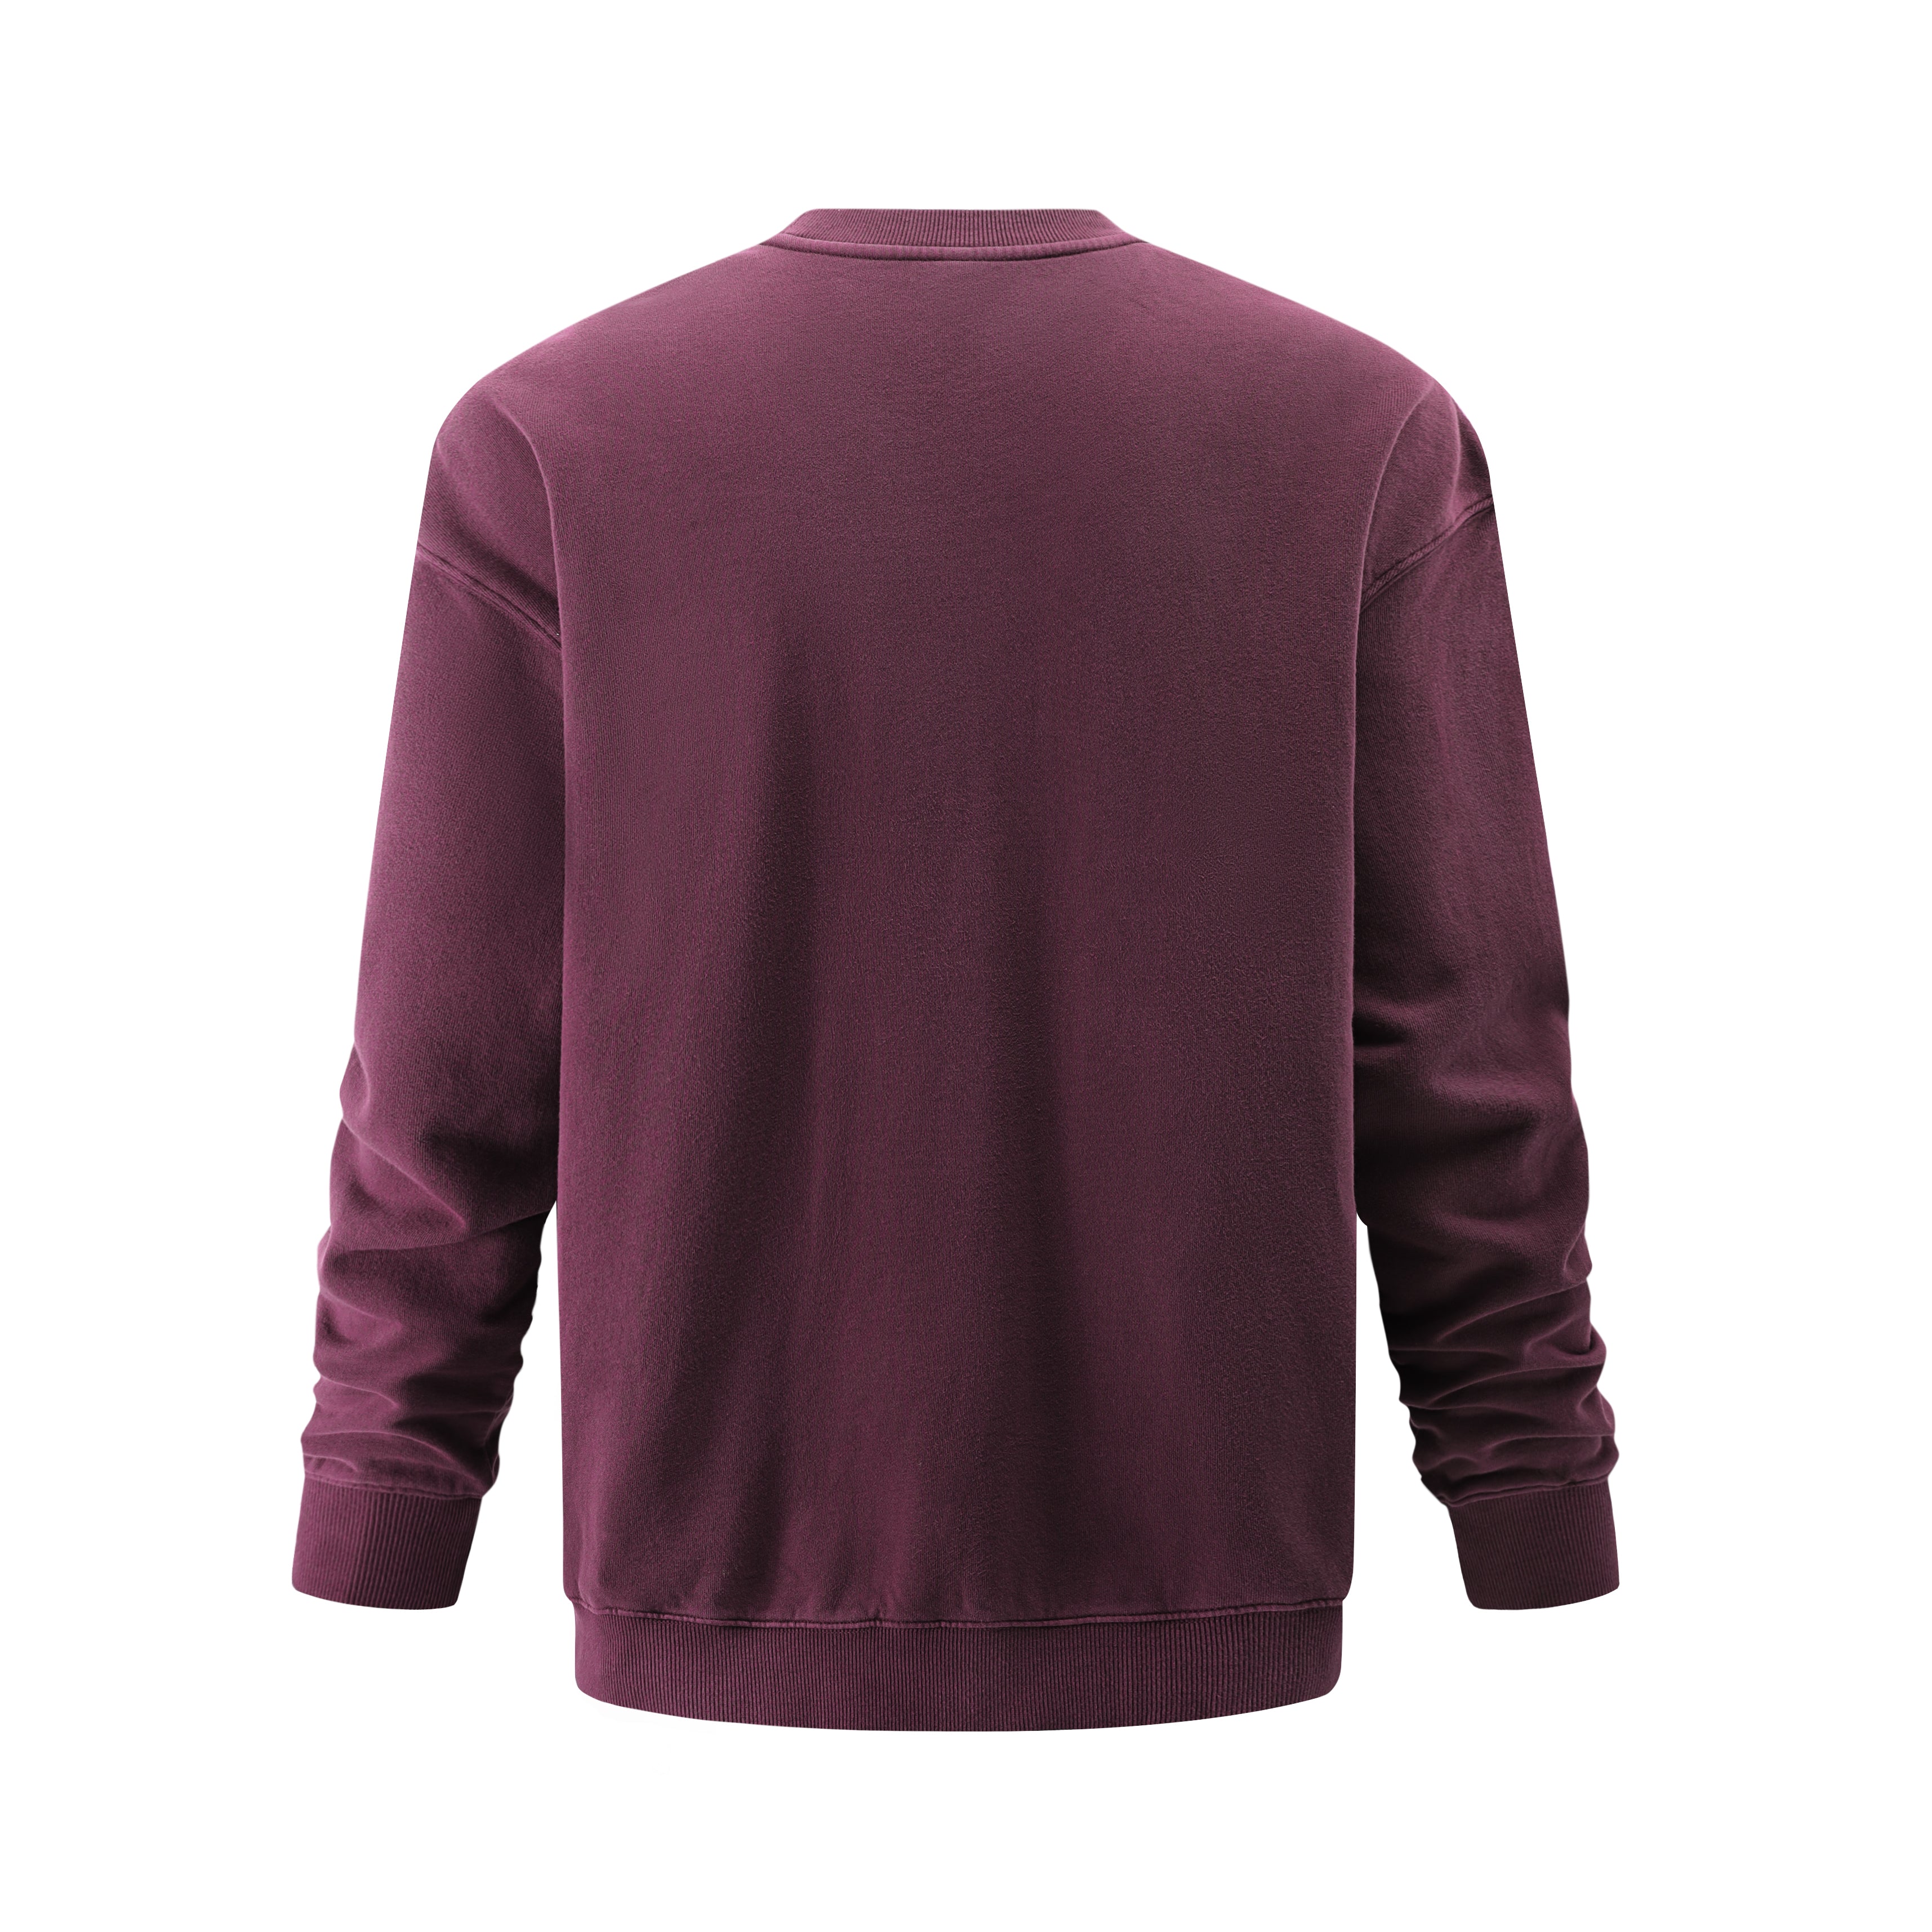 FRESHHOODS Burgundy Oversized Sweatshirt